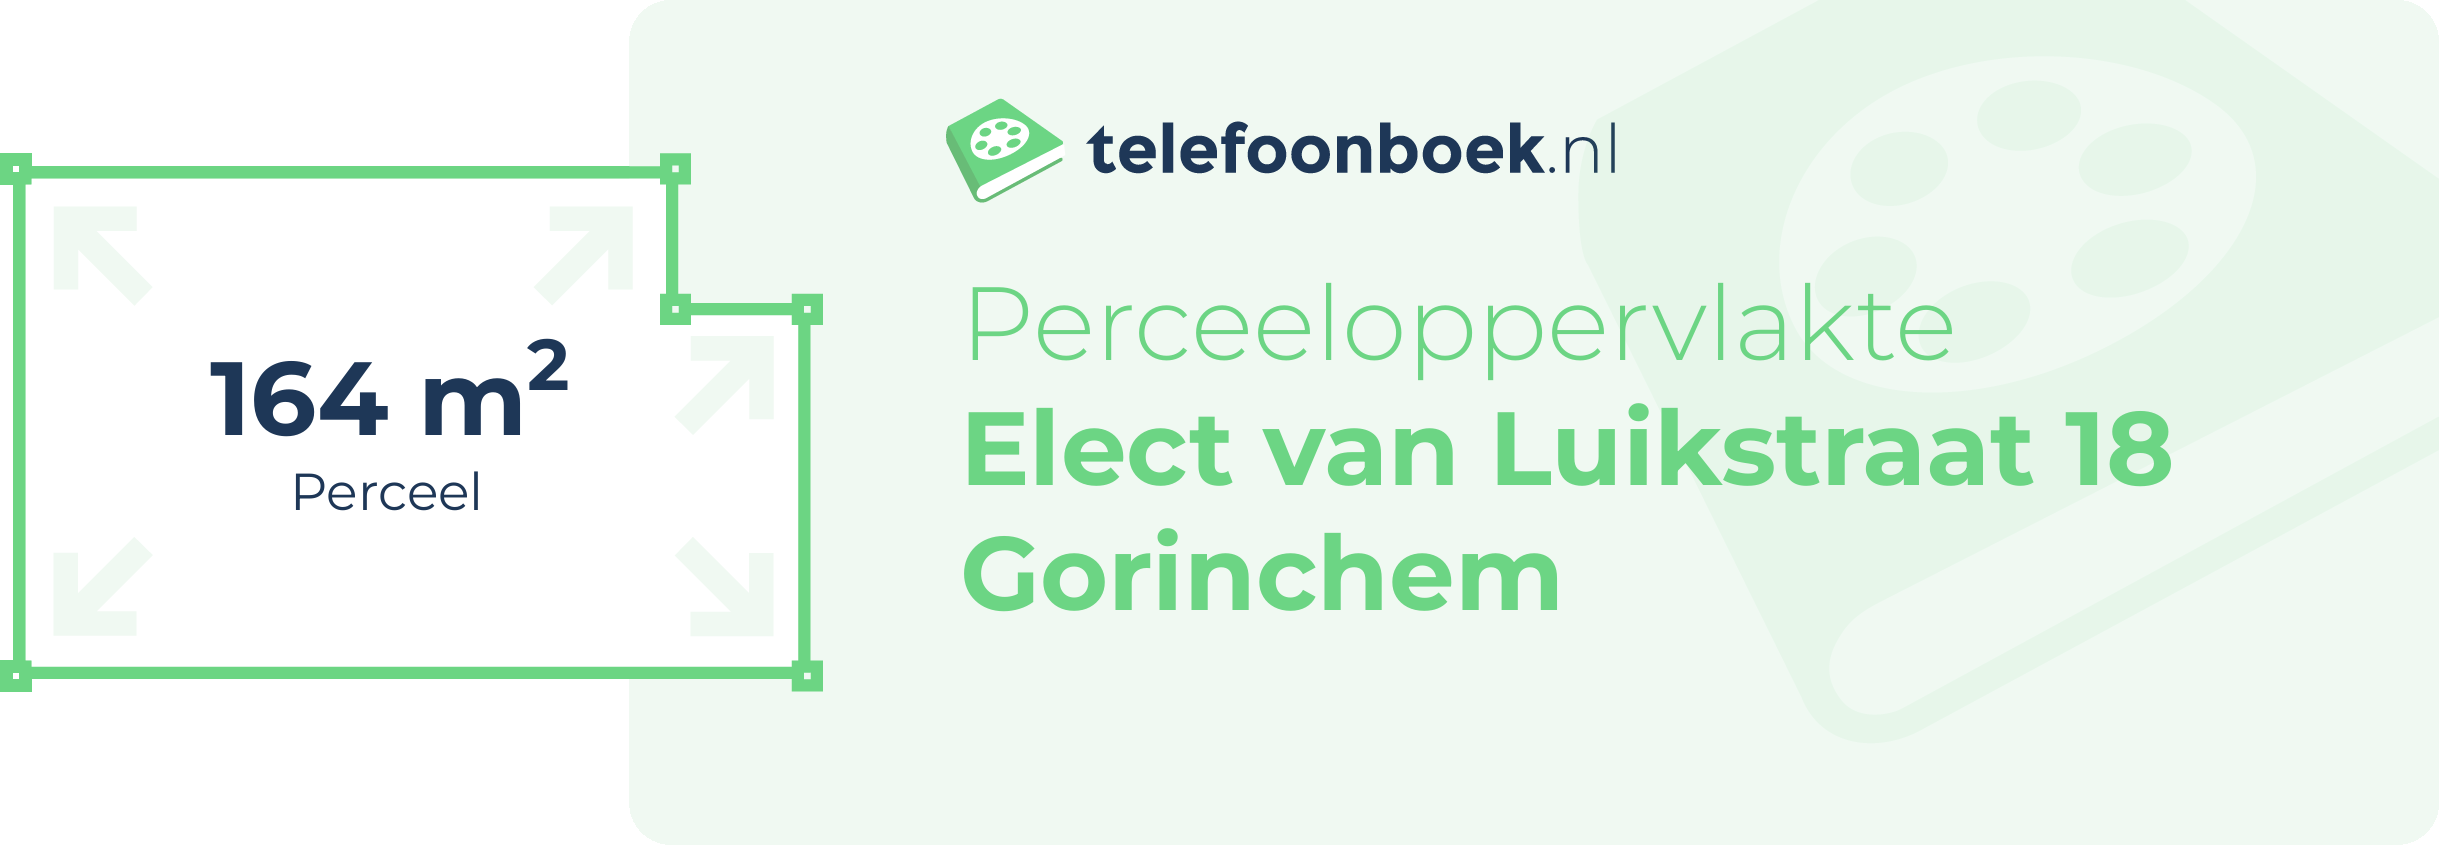 Perceeloppervlakte Elect Van Luikstraat 18 Gorinchem